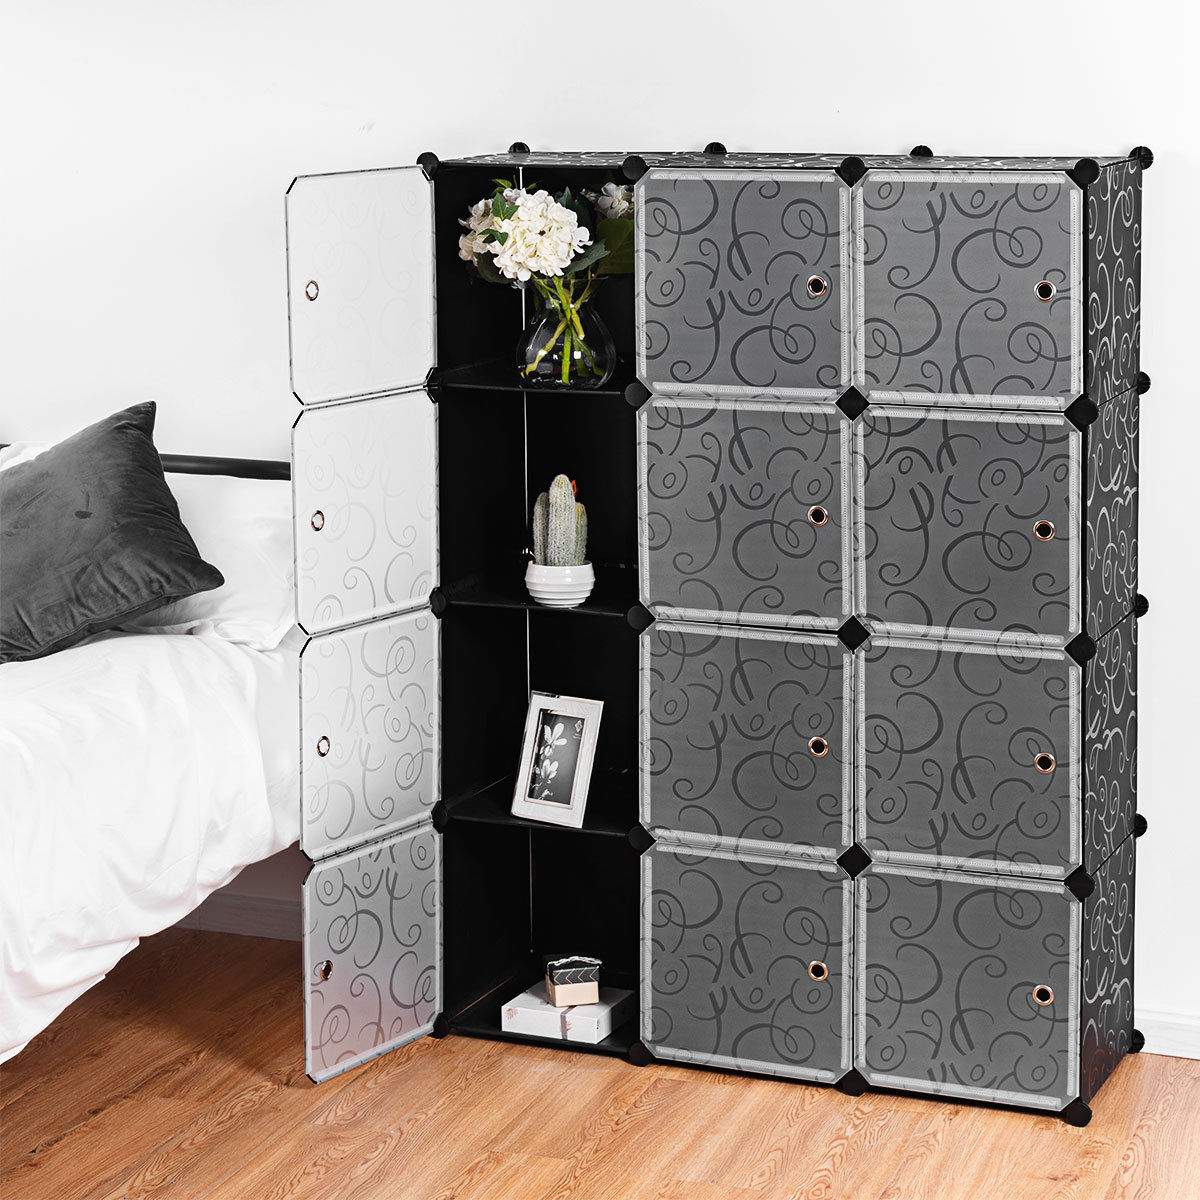 Costway DIY 12 Cube Portable Closet Storage Organizer Clothes Wardrobe Cabinet W/Doors